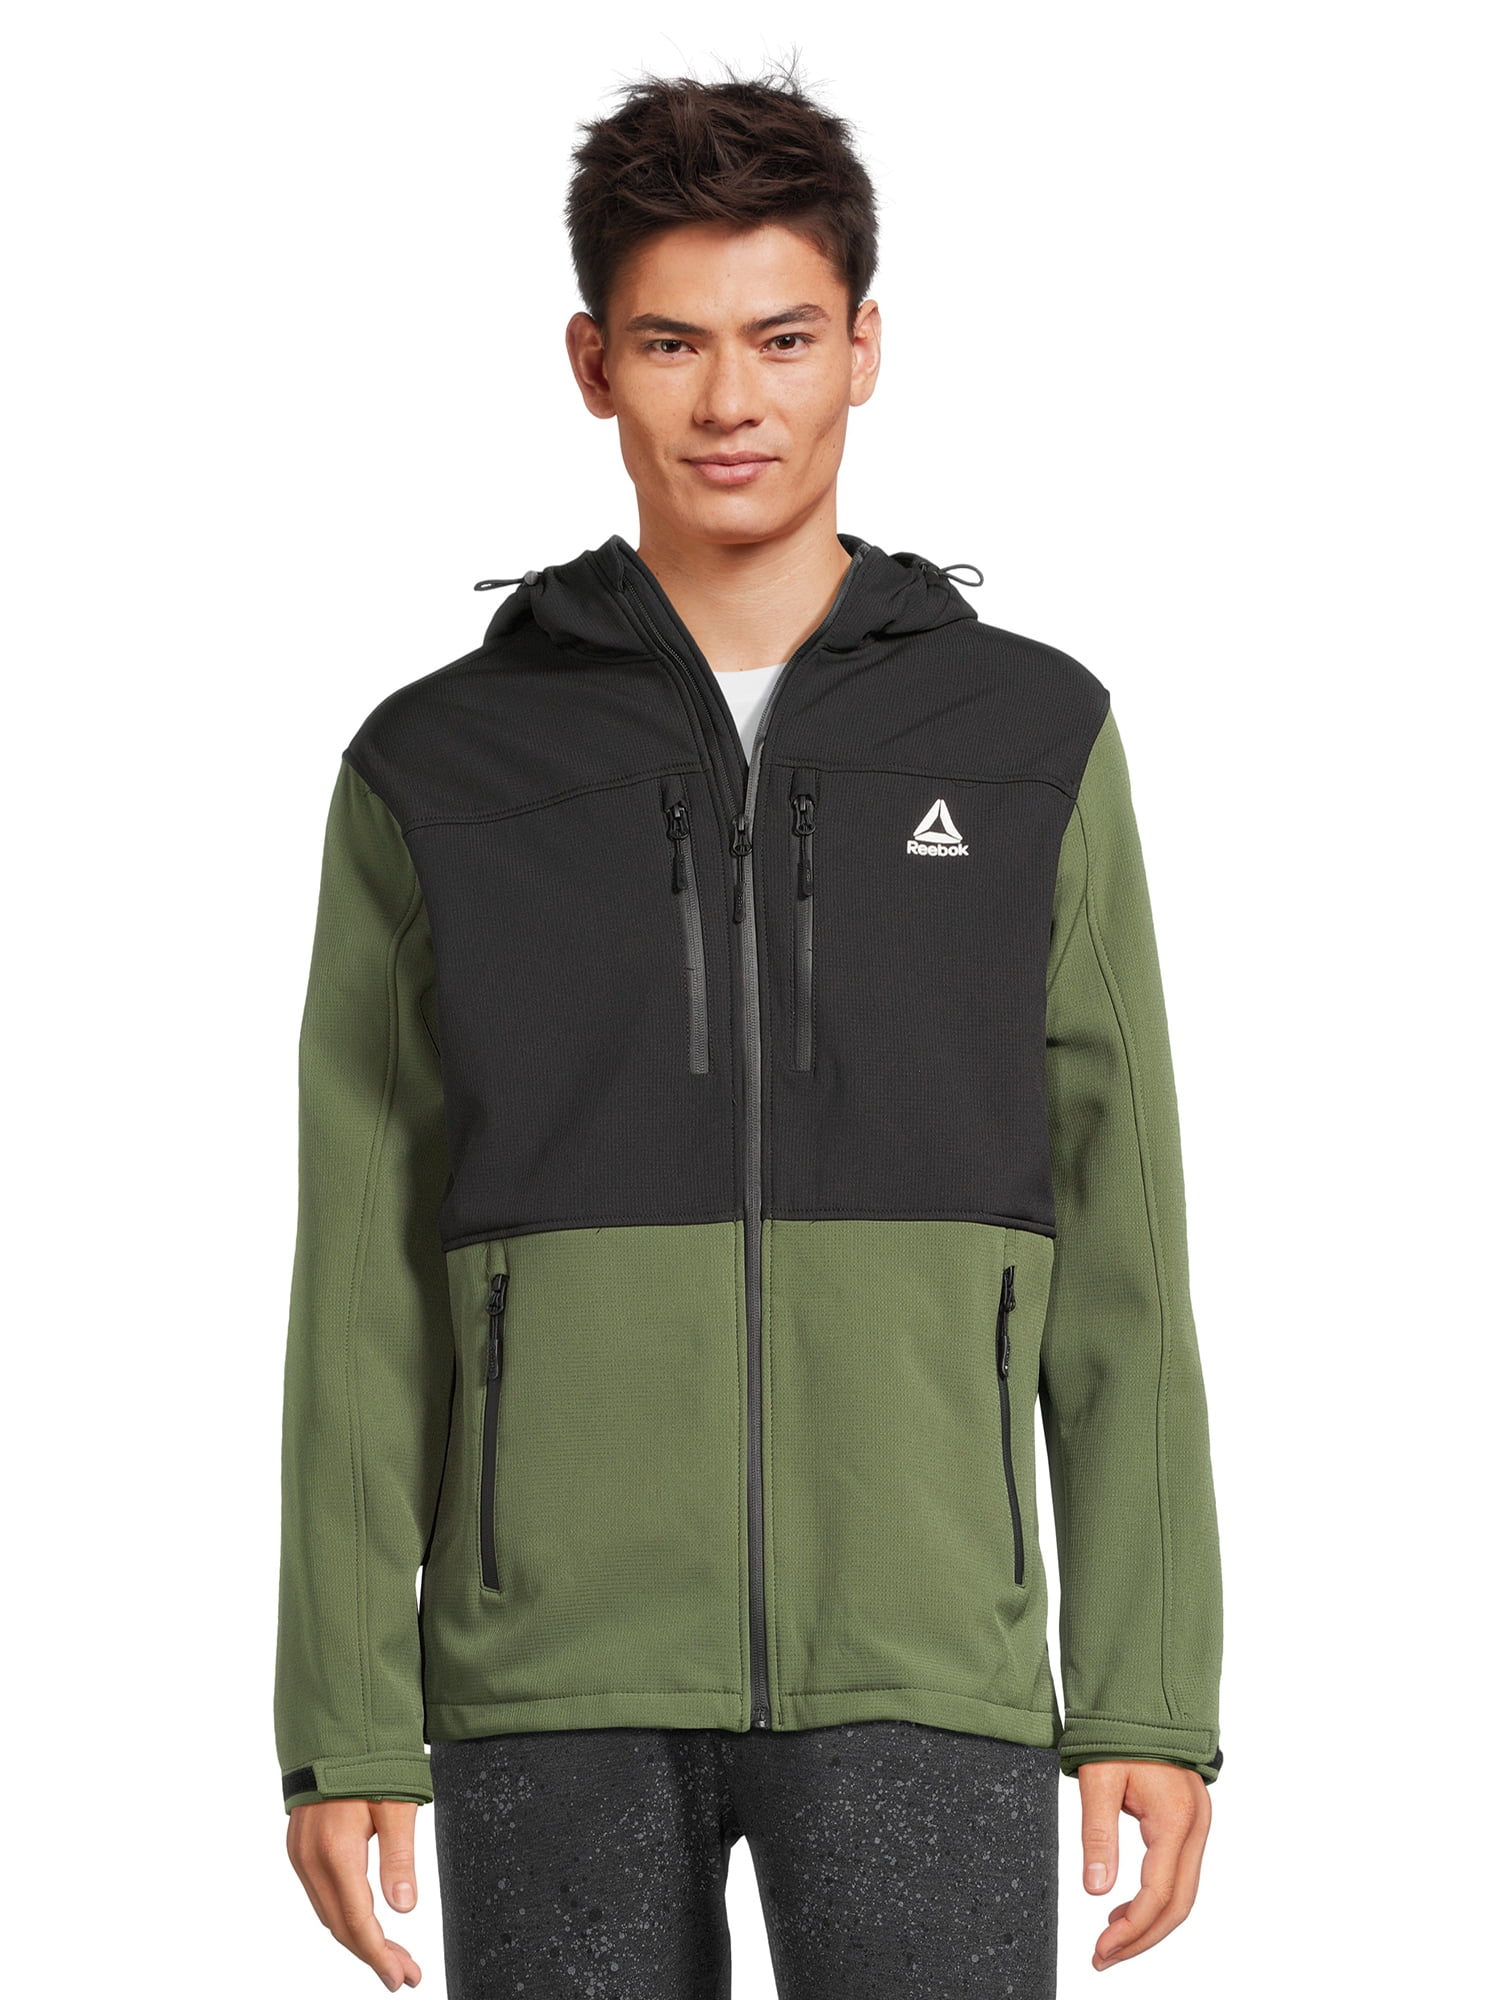 Reebok Men's Softshell Jacket, Sizes S-3XL - Walmart.com